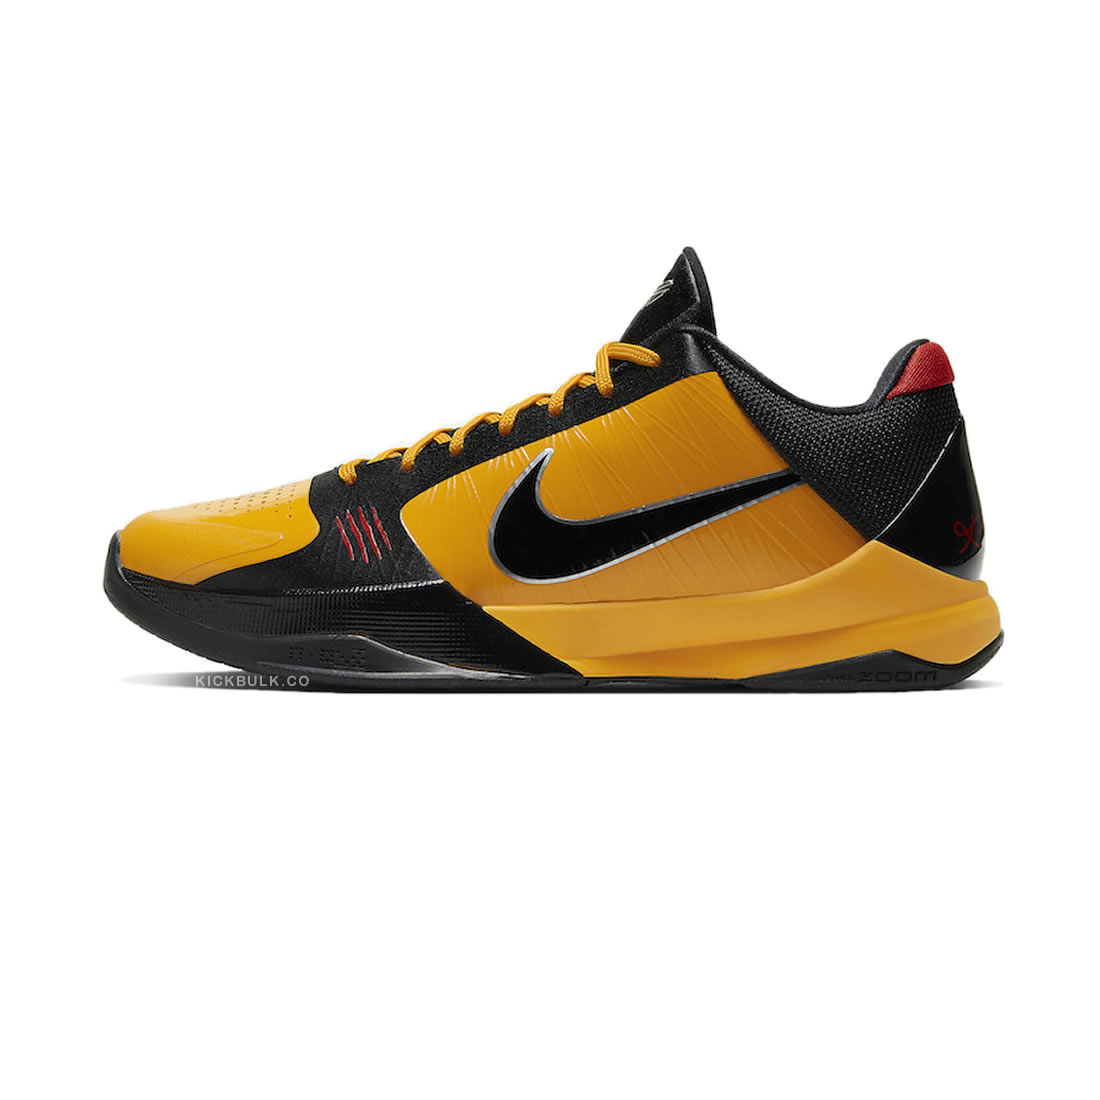 Nike Zoom Kobe 5 Protro Bruce Lee Cd4991 700 1 - www.kickbulk.co